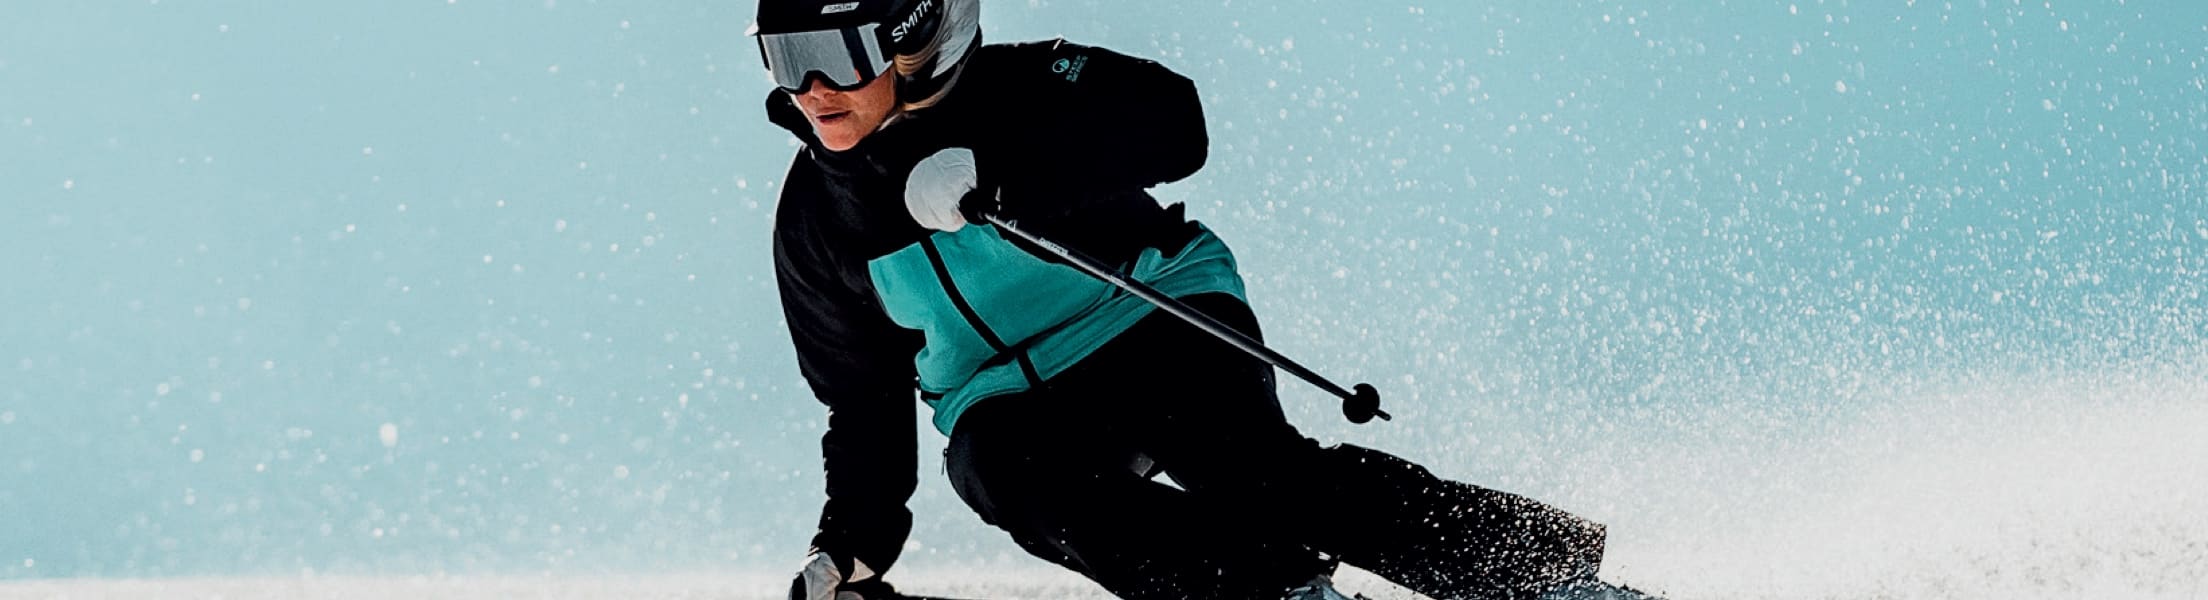 Blizzard WCR TLT 10 Demo Slalom Race Carver Ski Set 153 160 167 174 2019 